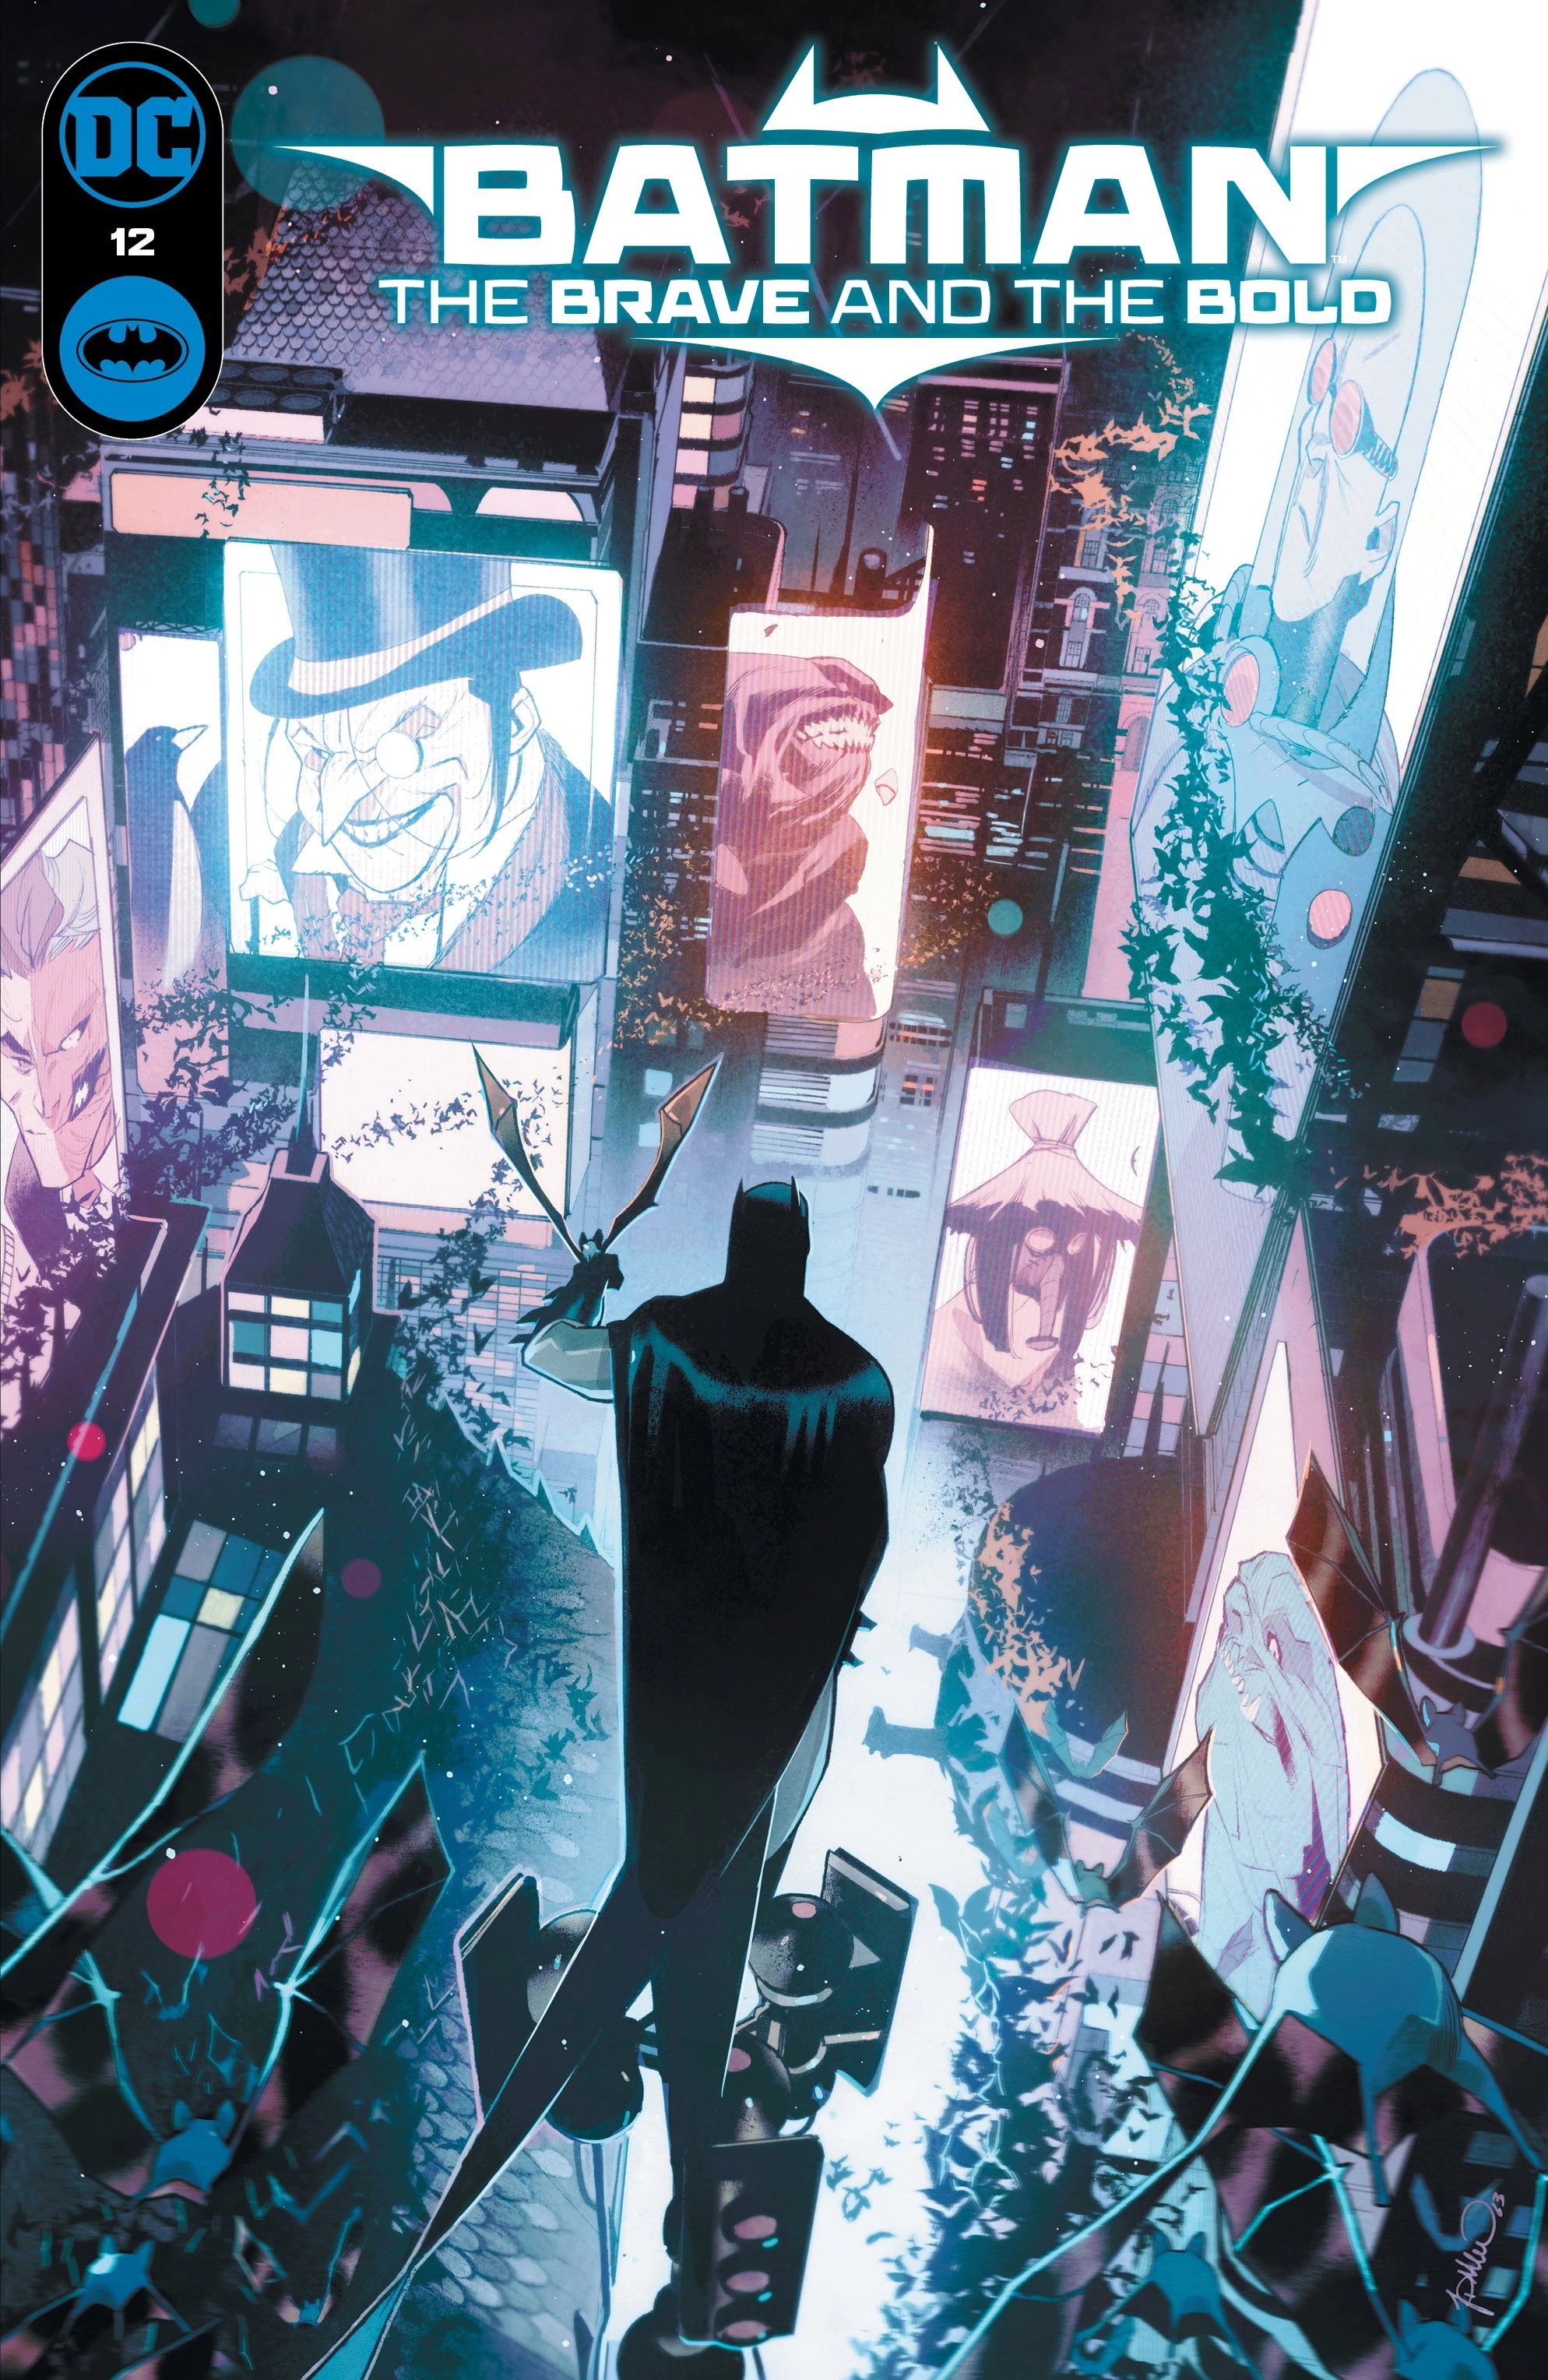 Batman está no topo de um semáforo, olhando para o centro de Gotham iluminado por telas exibindo seus inimigos.